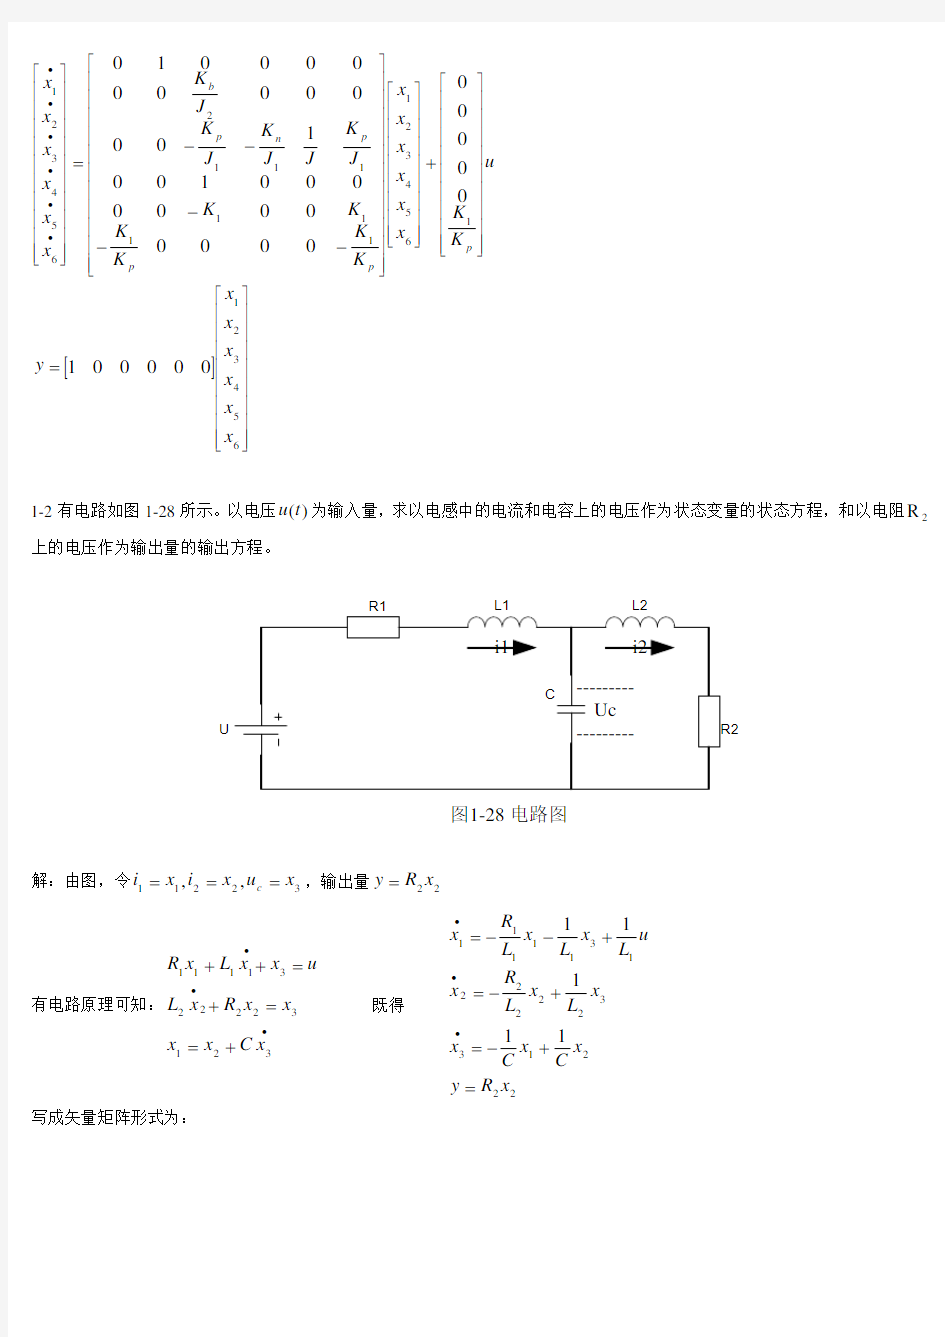 《现代控制理论》第3版(刘豹_唐万生)课后习题答案